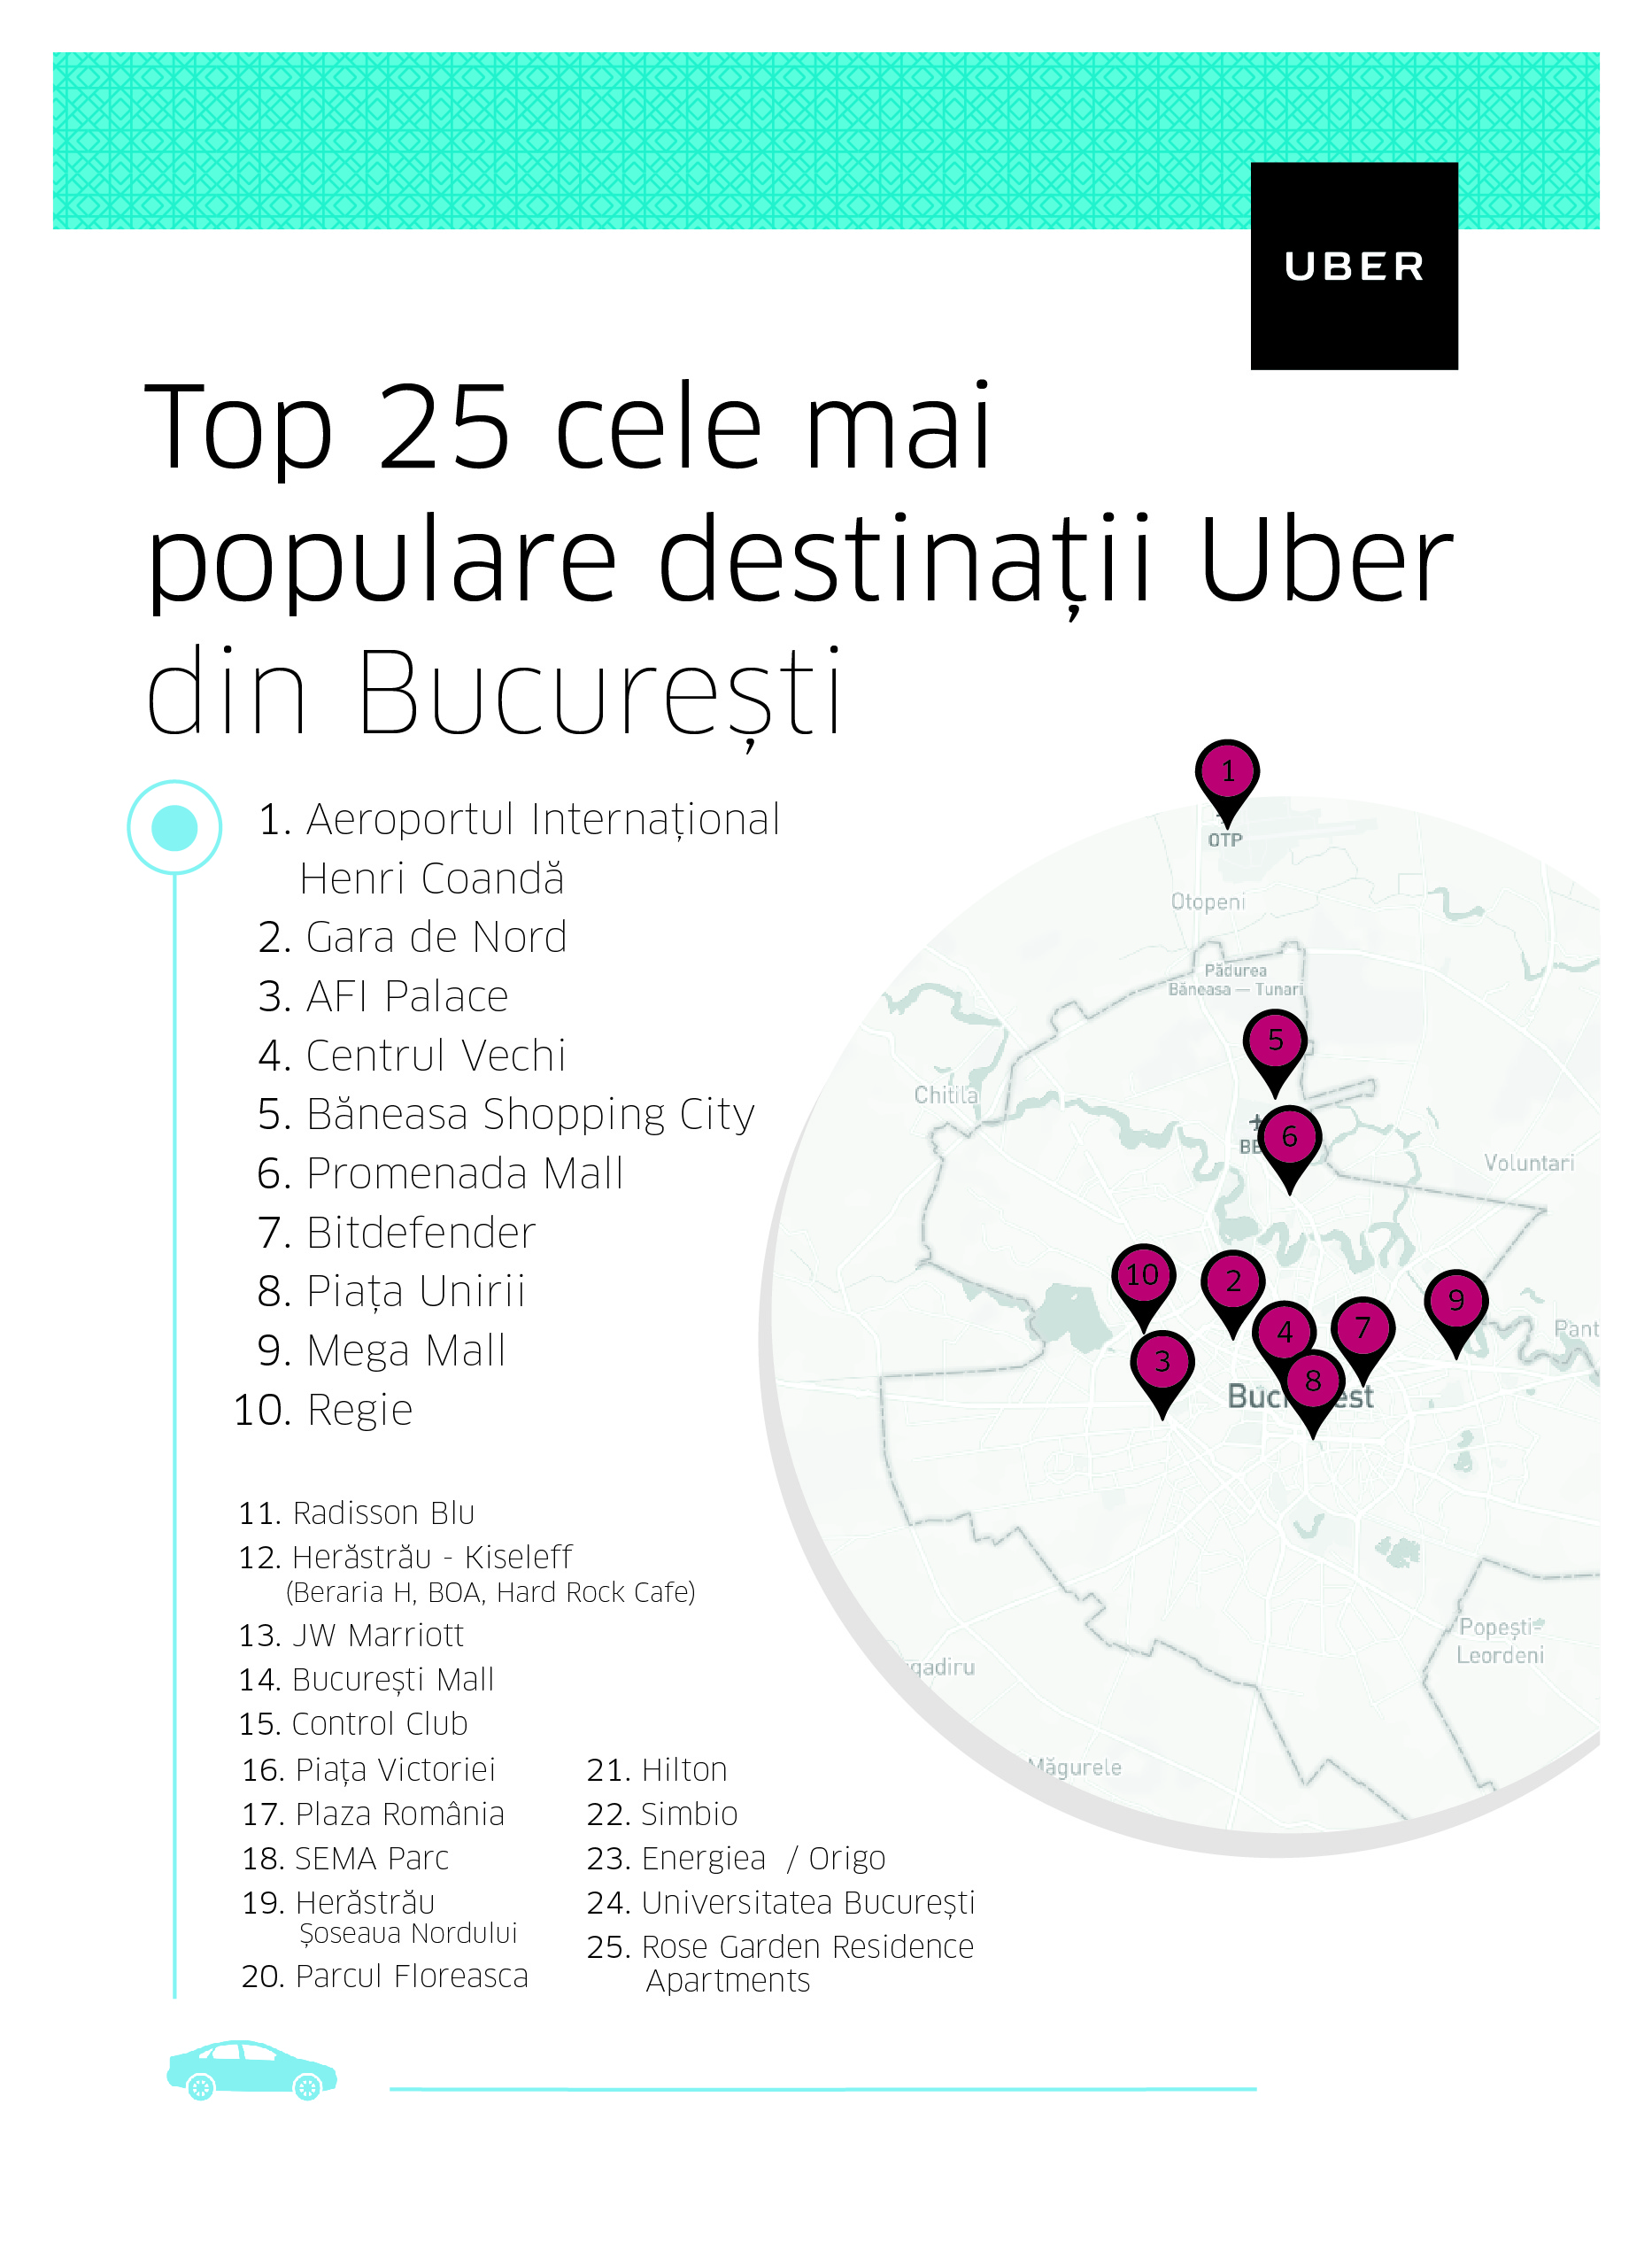 Unde merg cel mai des utilizatorii Uber: top 25 destinații din București